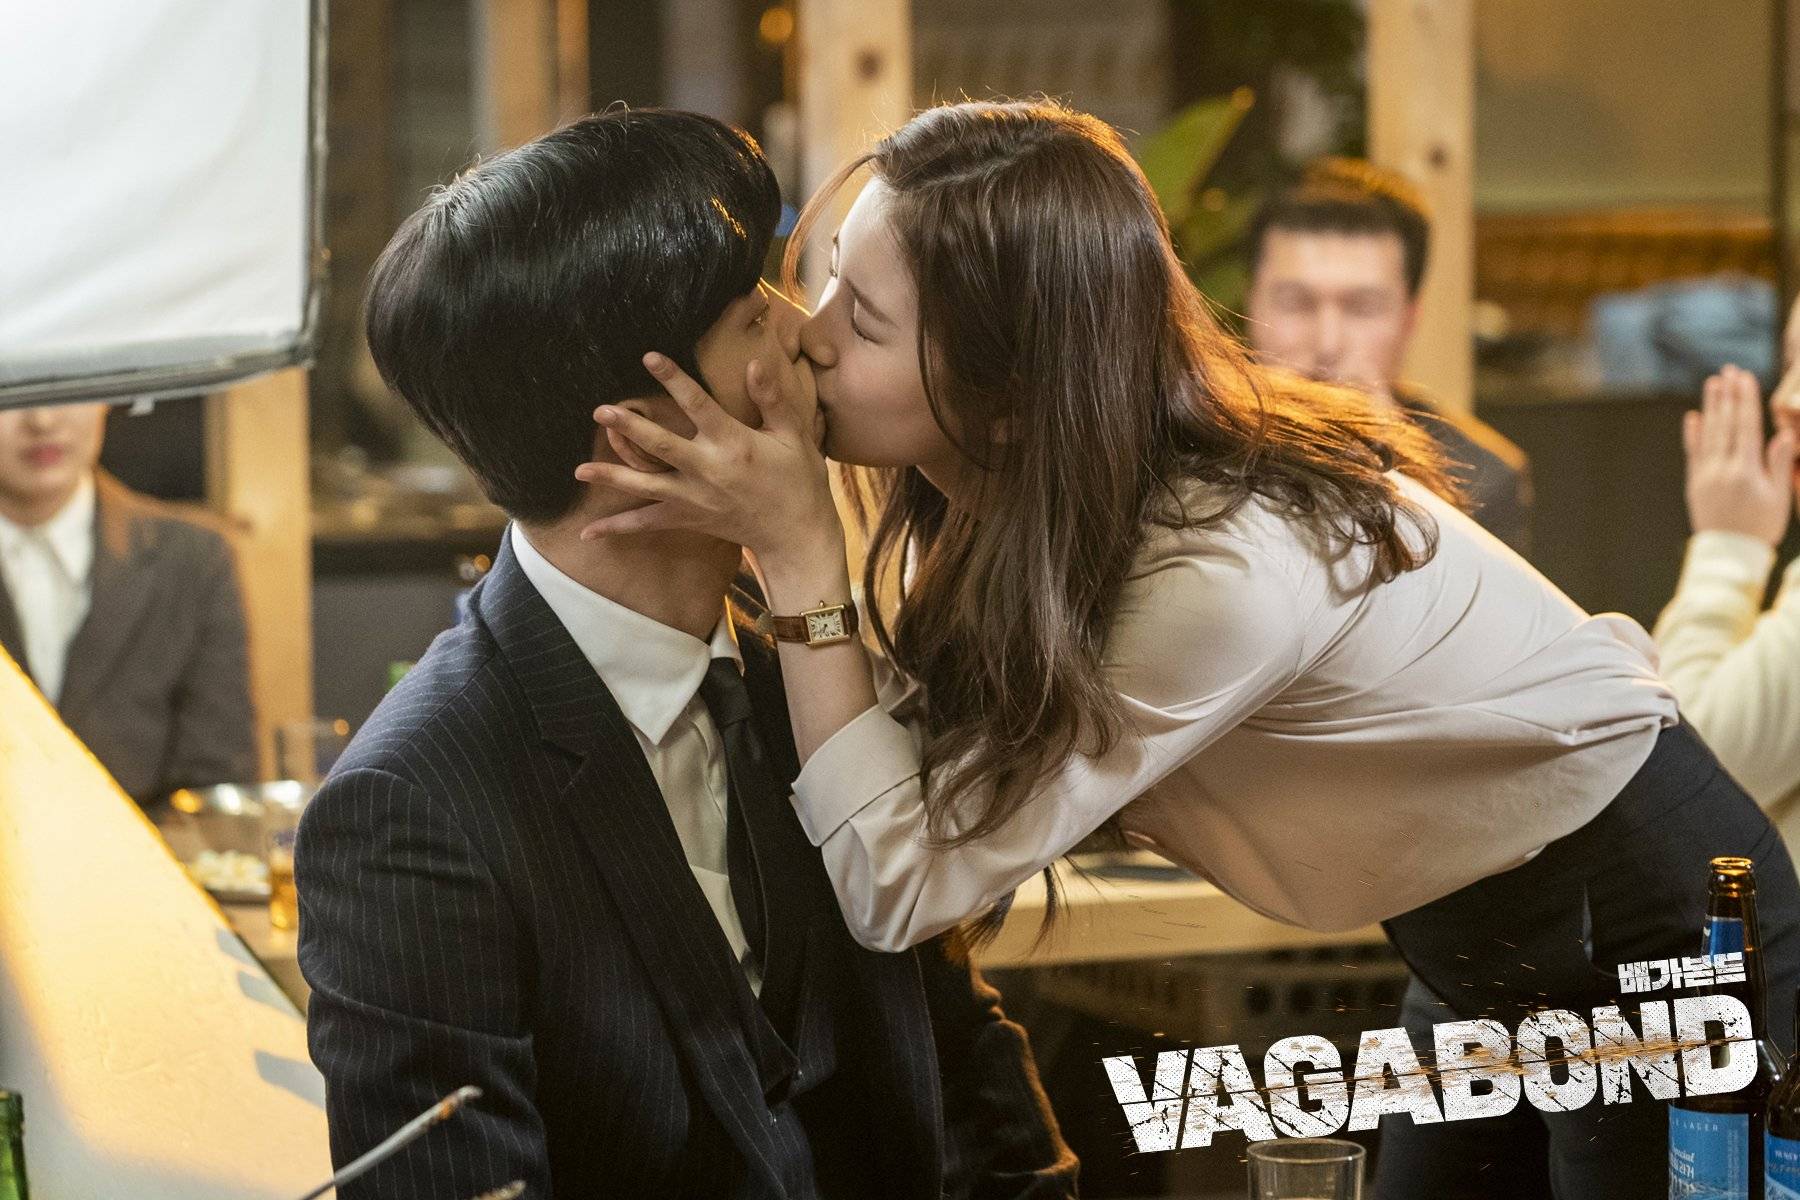 Umoderne at opfinde kommentator Photos] New Behind the Scenes Images Added for the Korean Drama 'Vagabond'  @ HanCinema